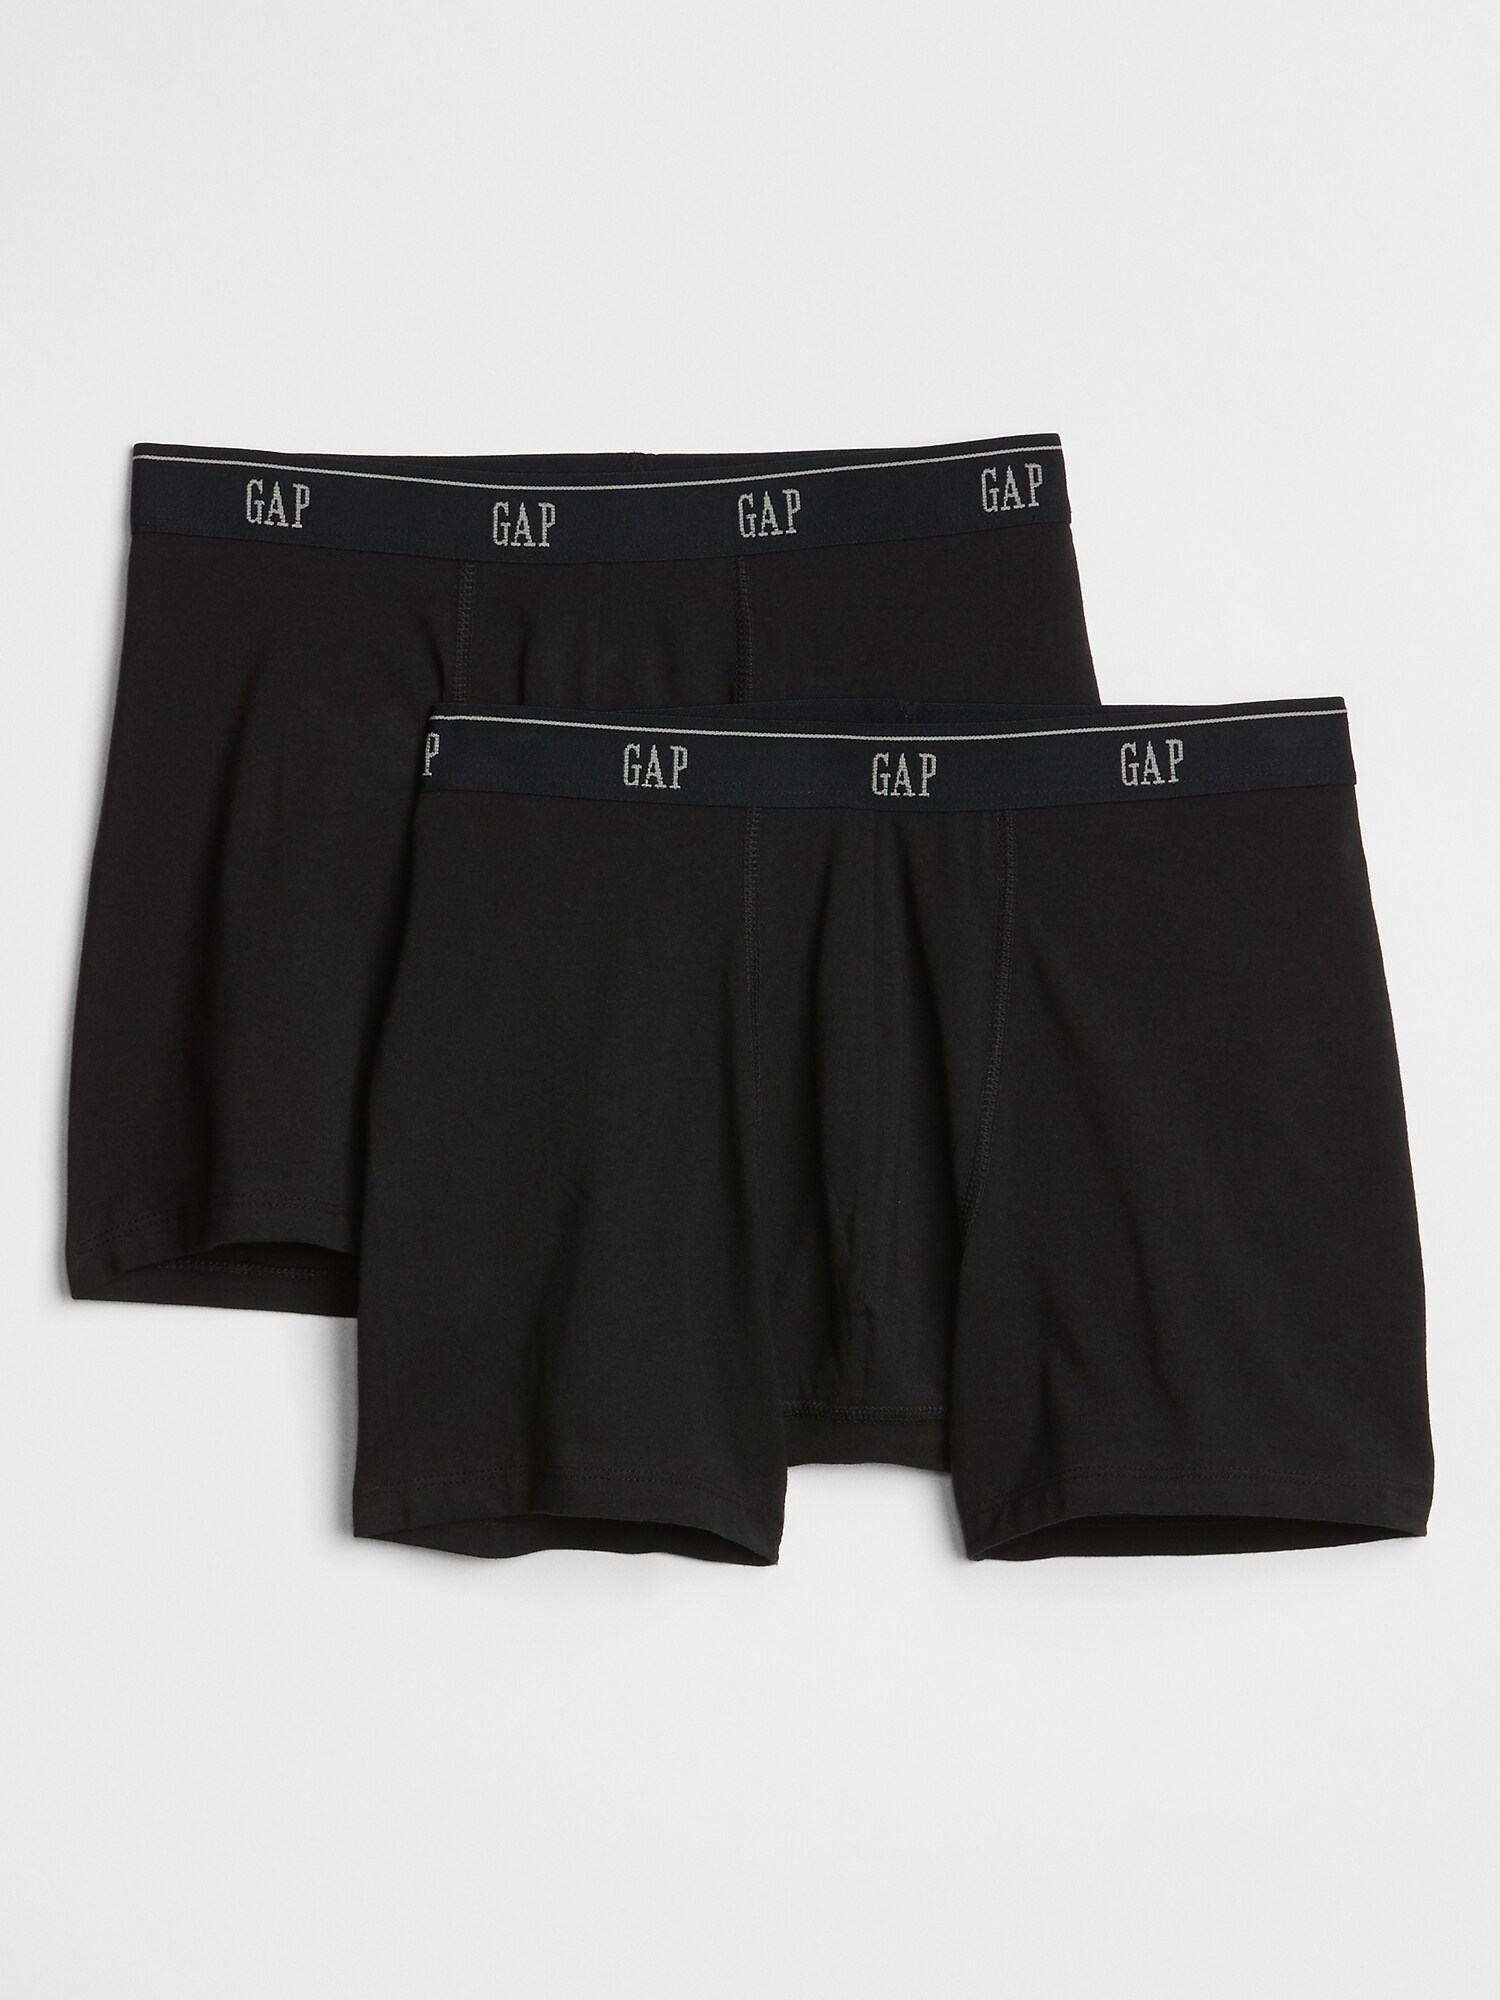 gap mens boxer shorts